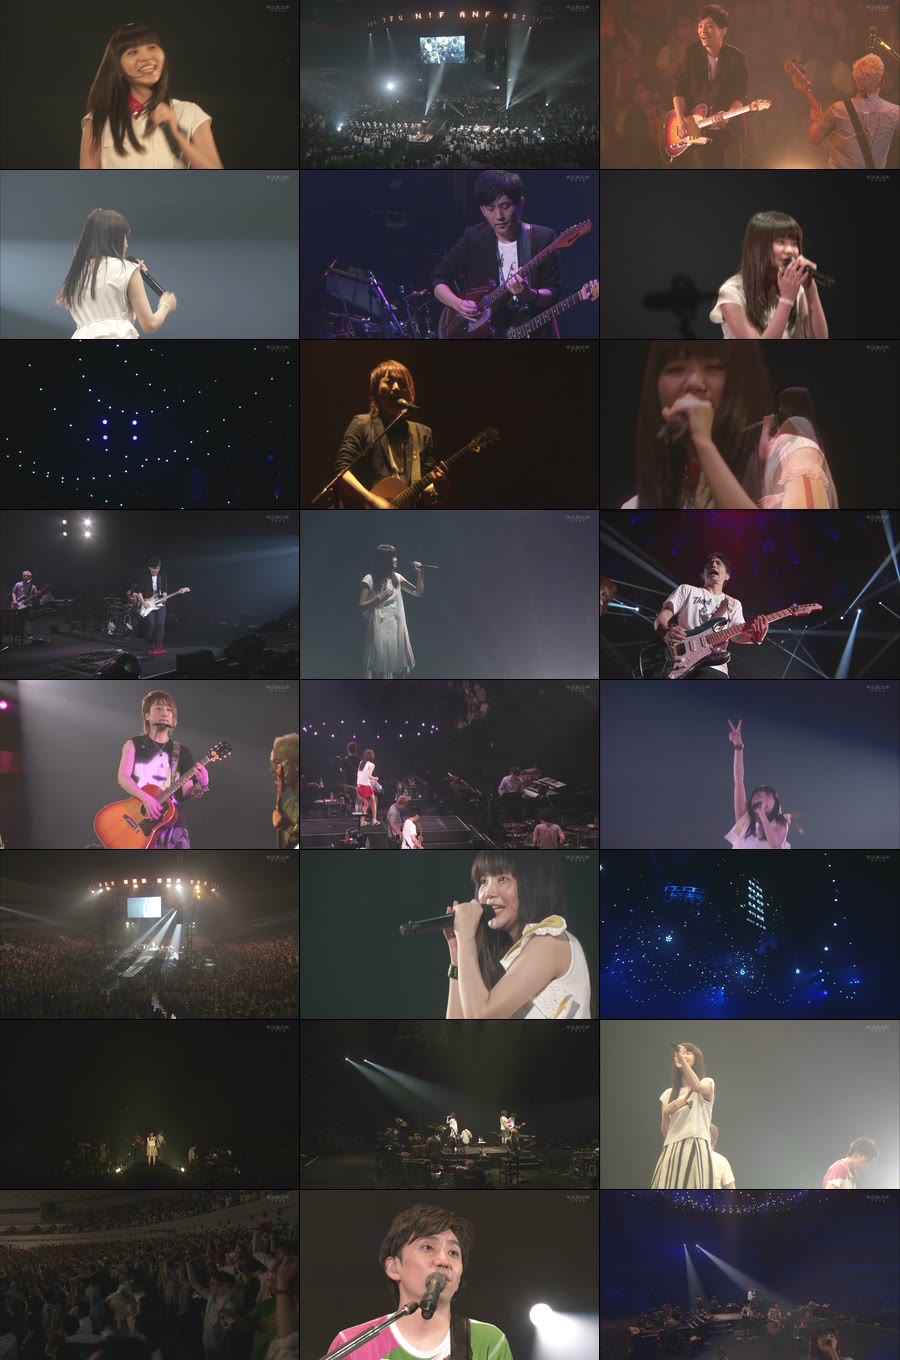 生物股长 (いきものがかり) – Ikimonogakari Tour 2015 ~FUN! FUN! FANFARE!~ [WOWOW] (2015) 1080P-HDTV [TS 17.2G]HDTV、日本演唱会、蓝光演唱会6